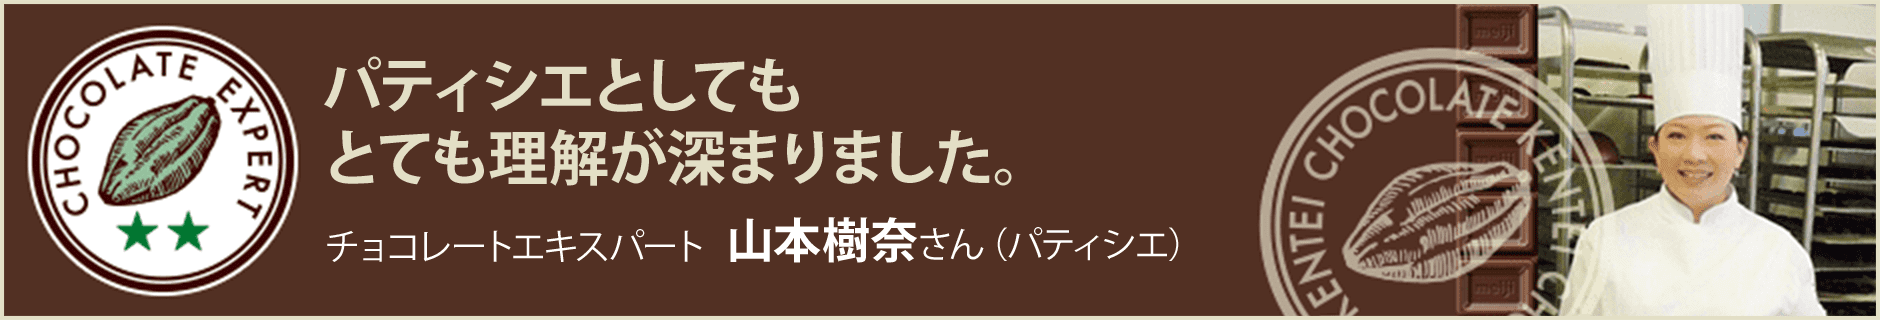 チョコレートエキスパート 山本樹奈さん